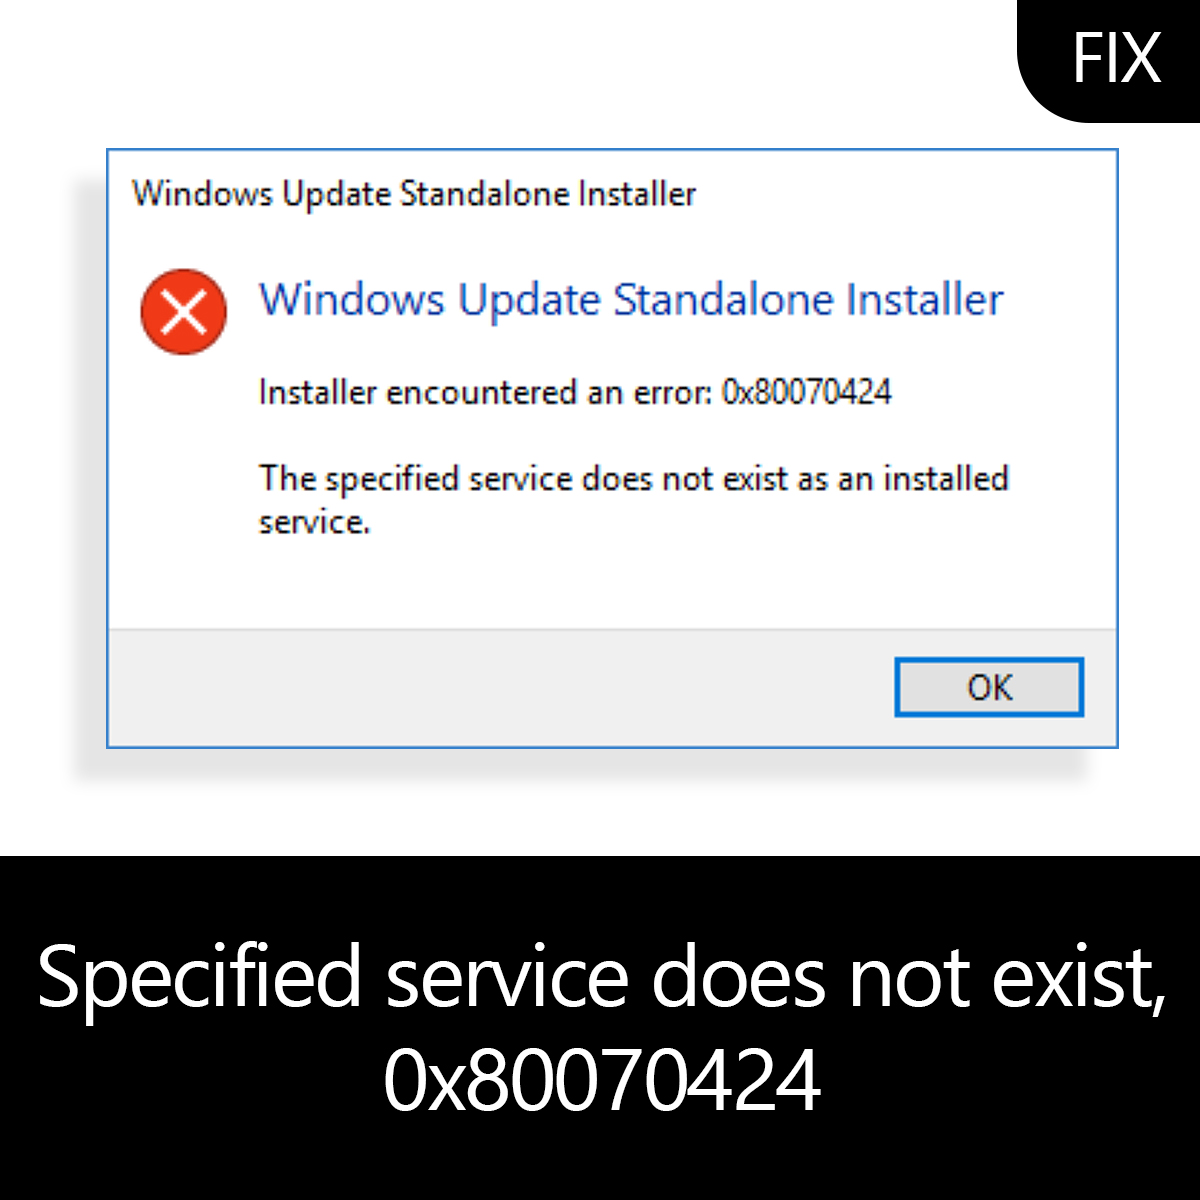 windows updates standalone installer